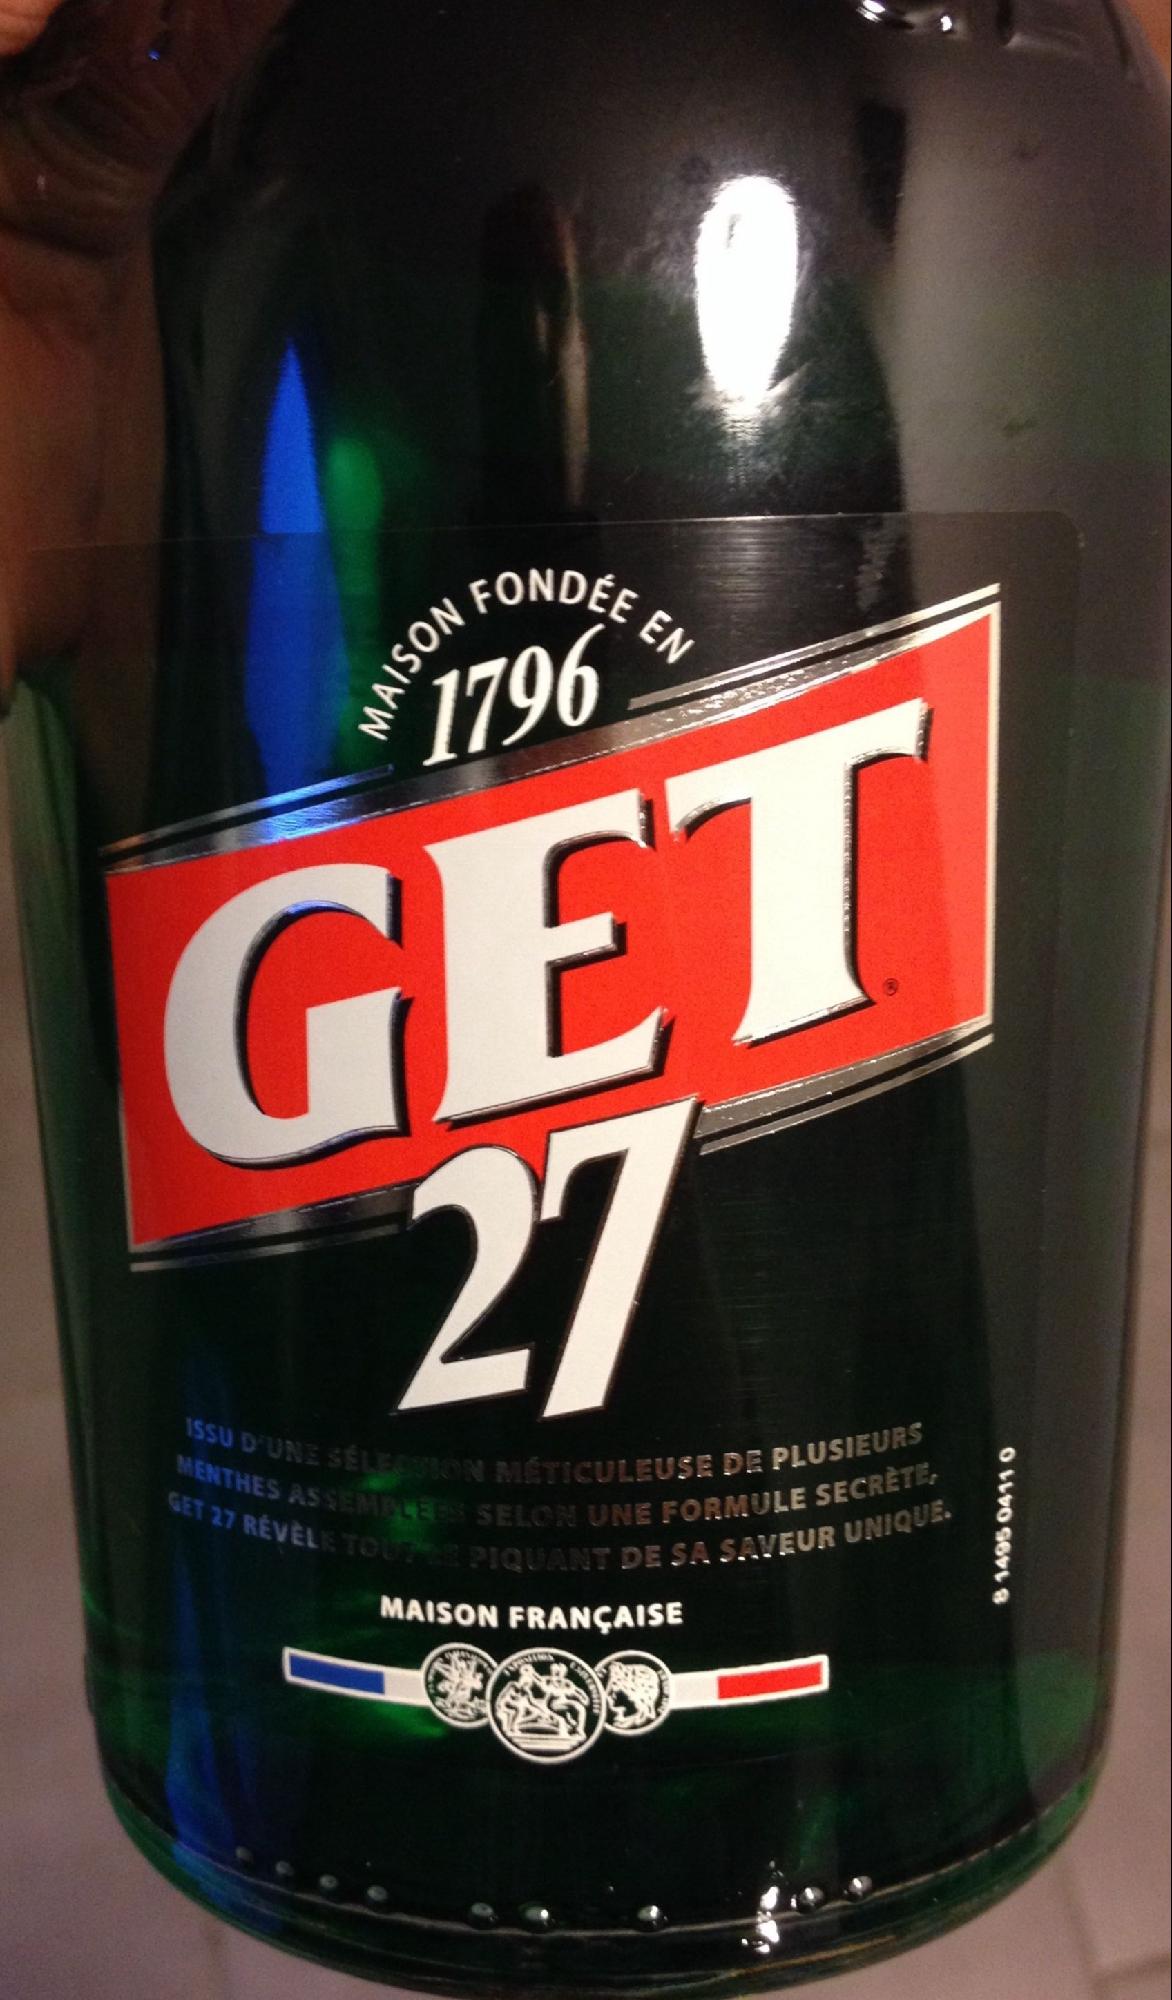 Pourquoi les bouteilles de Get 27 ont-elles disparu des rayons de